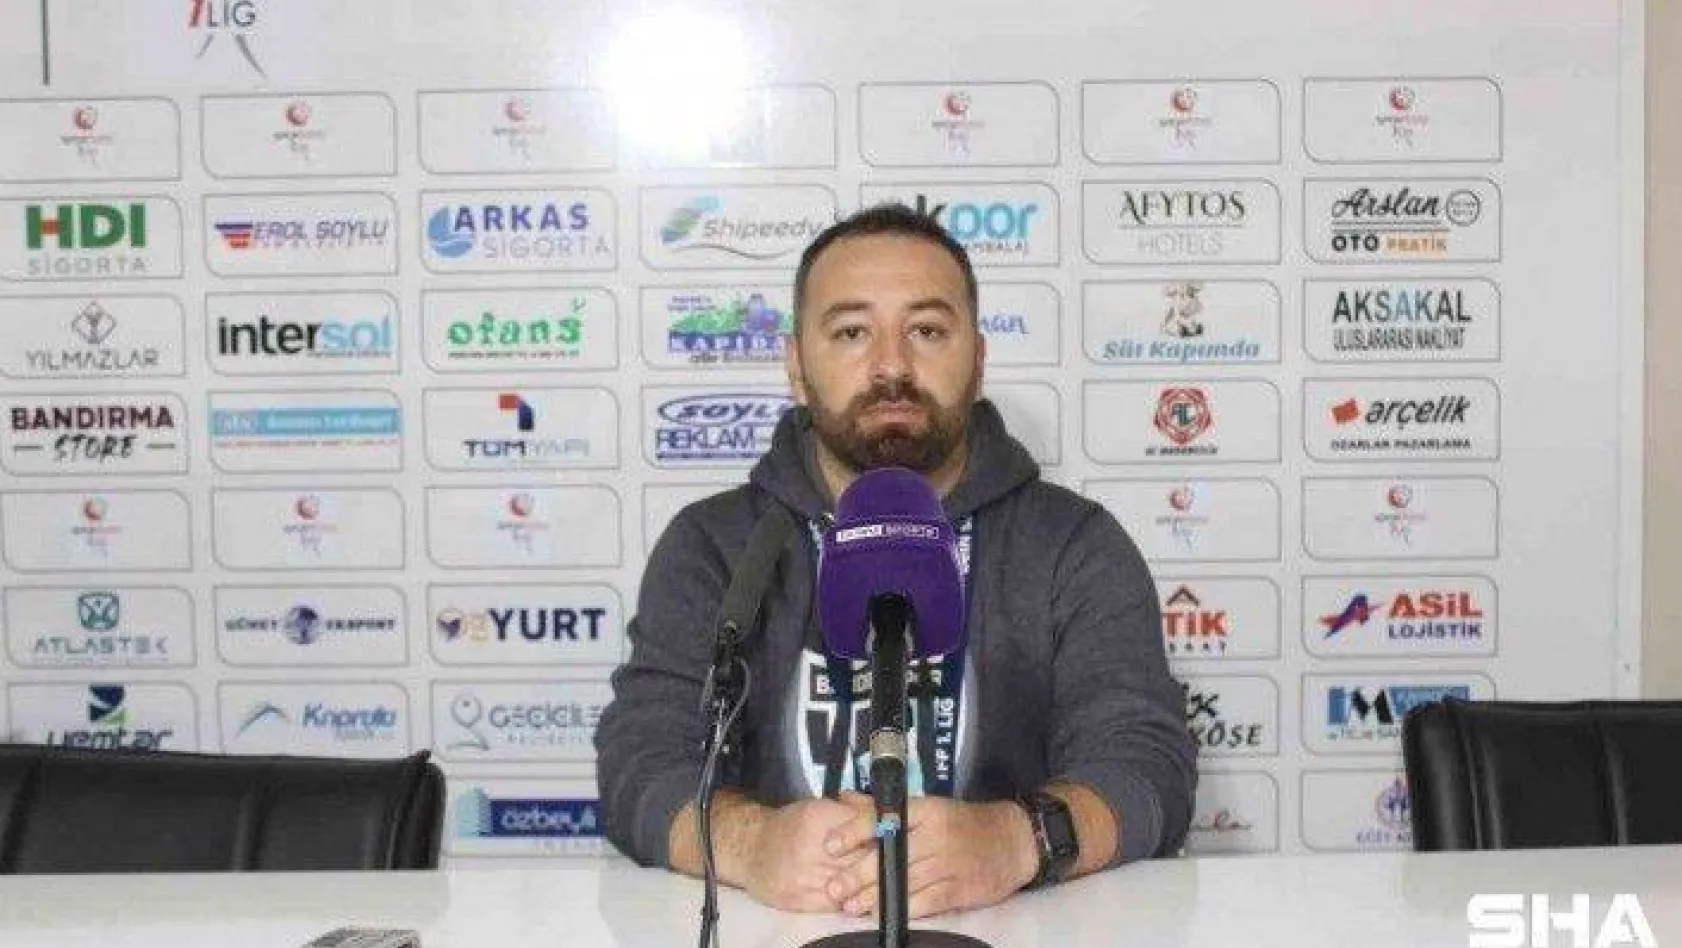 Bandırmaspor - Denizlispor maçının ardından